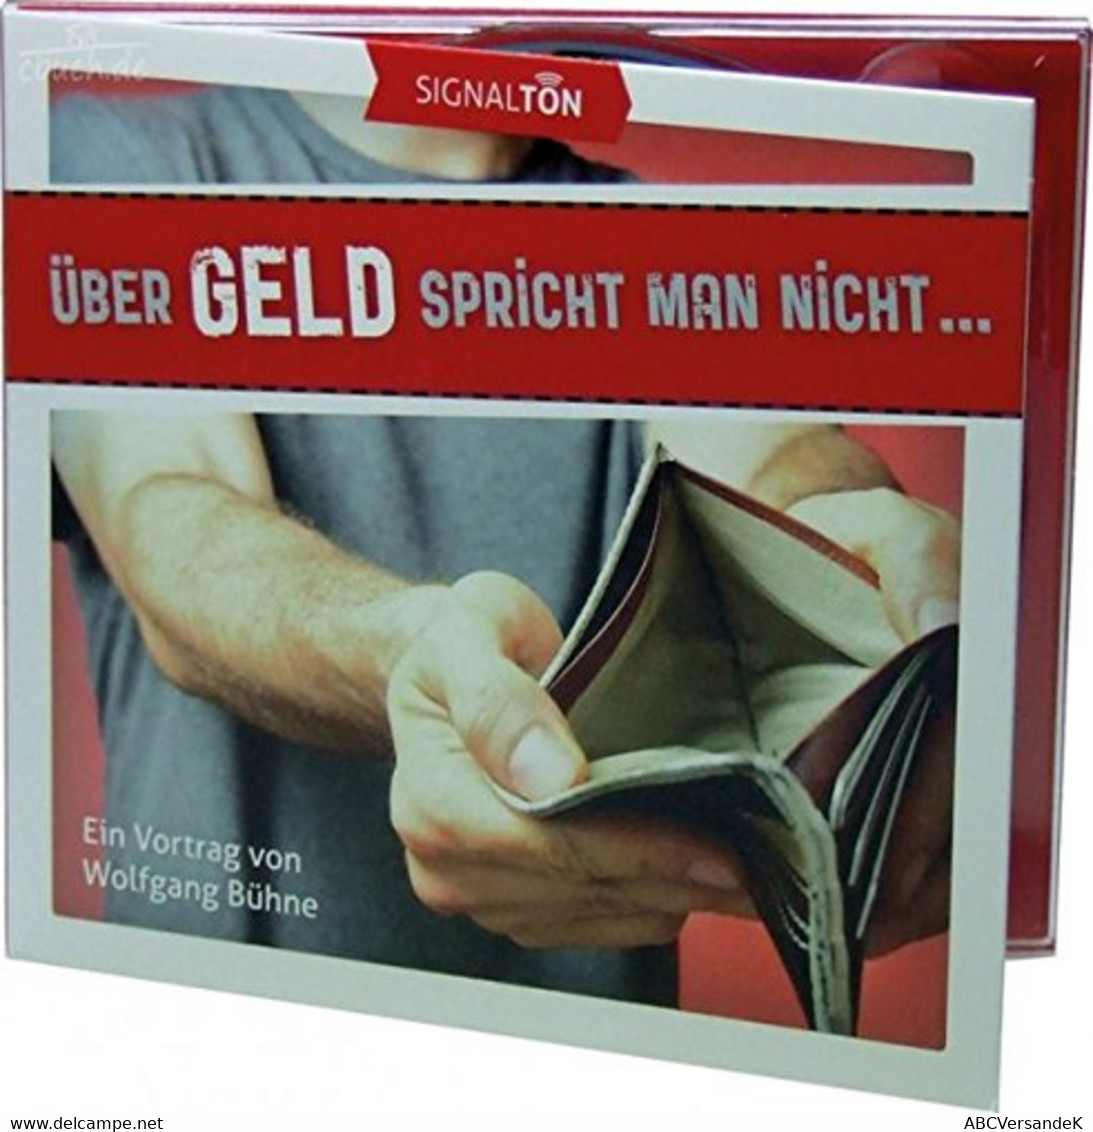 Über Geld Spricht Man Nicht...: Ein Vortrag Von Wolfgang Bühne - CDs